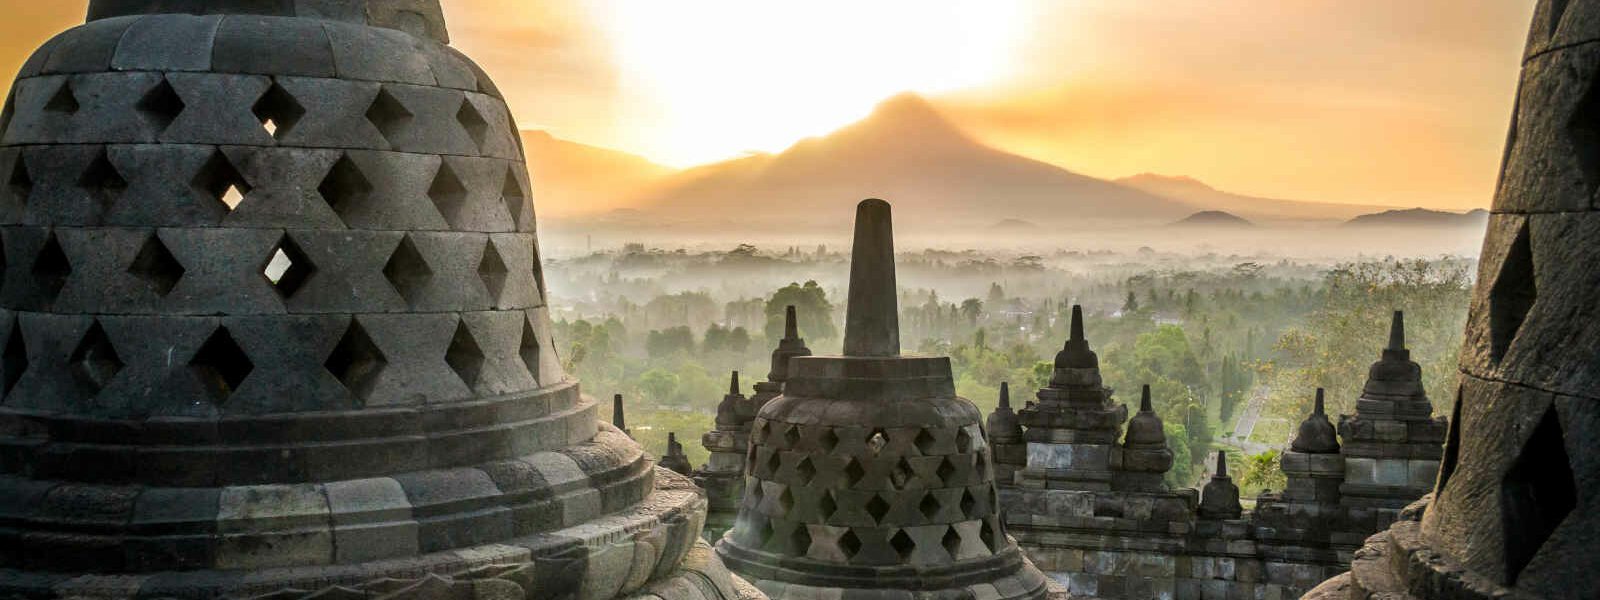 Lever de soleil au temple de Borobudur